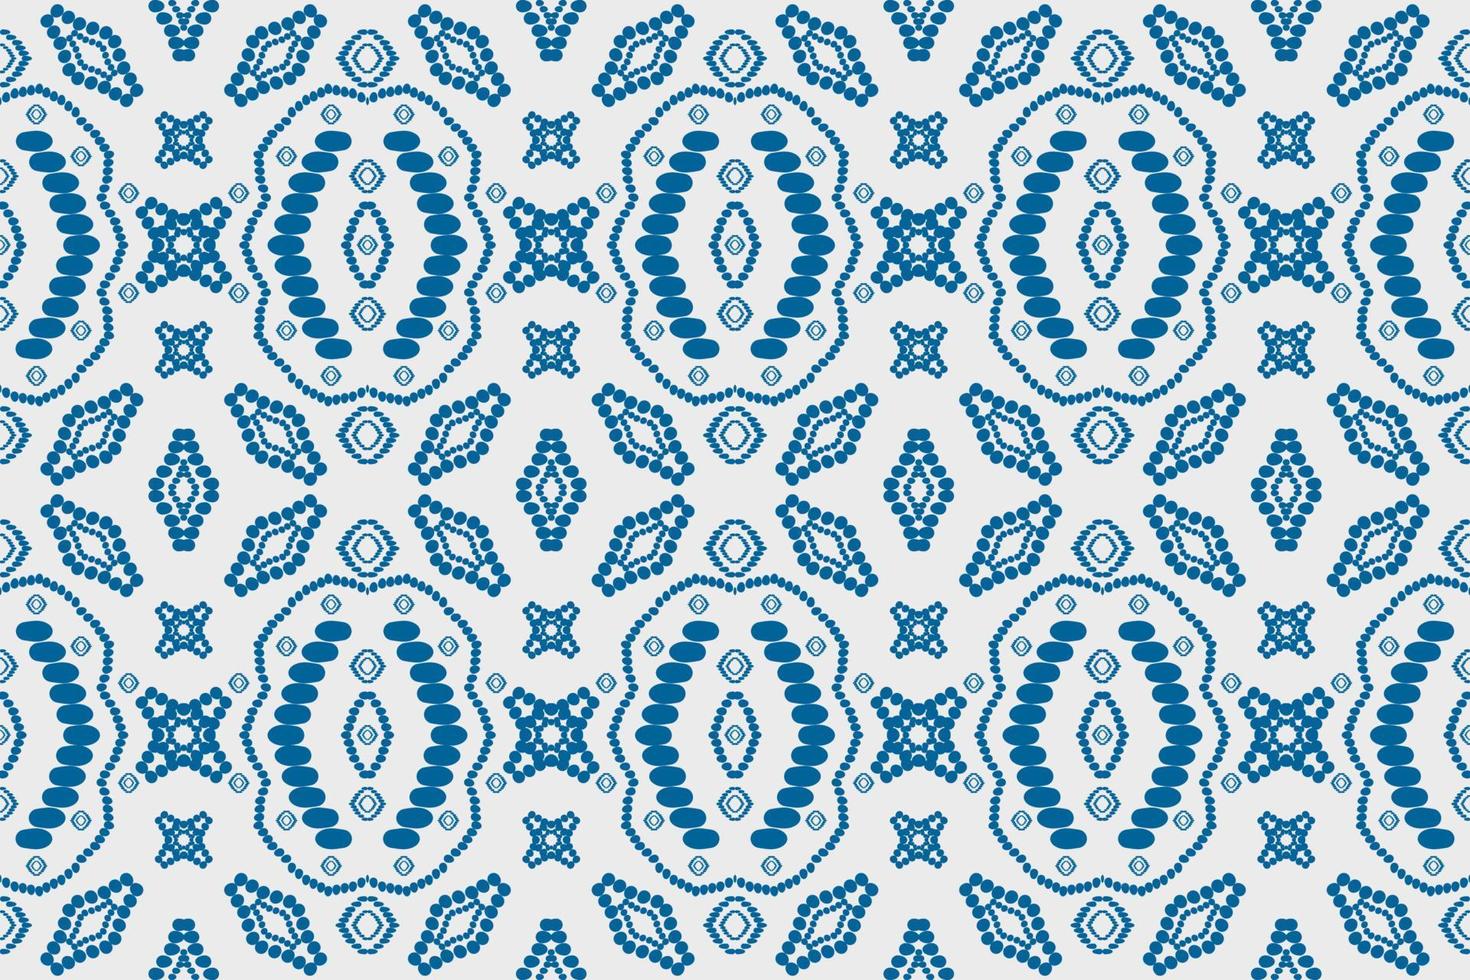 geométrica étnica oriental tradicional pattern.figure tribal bordado style.design para papel de parede, roupas, embrulho, tecido, ilustração vetorial. vetor